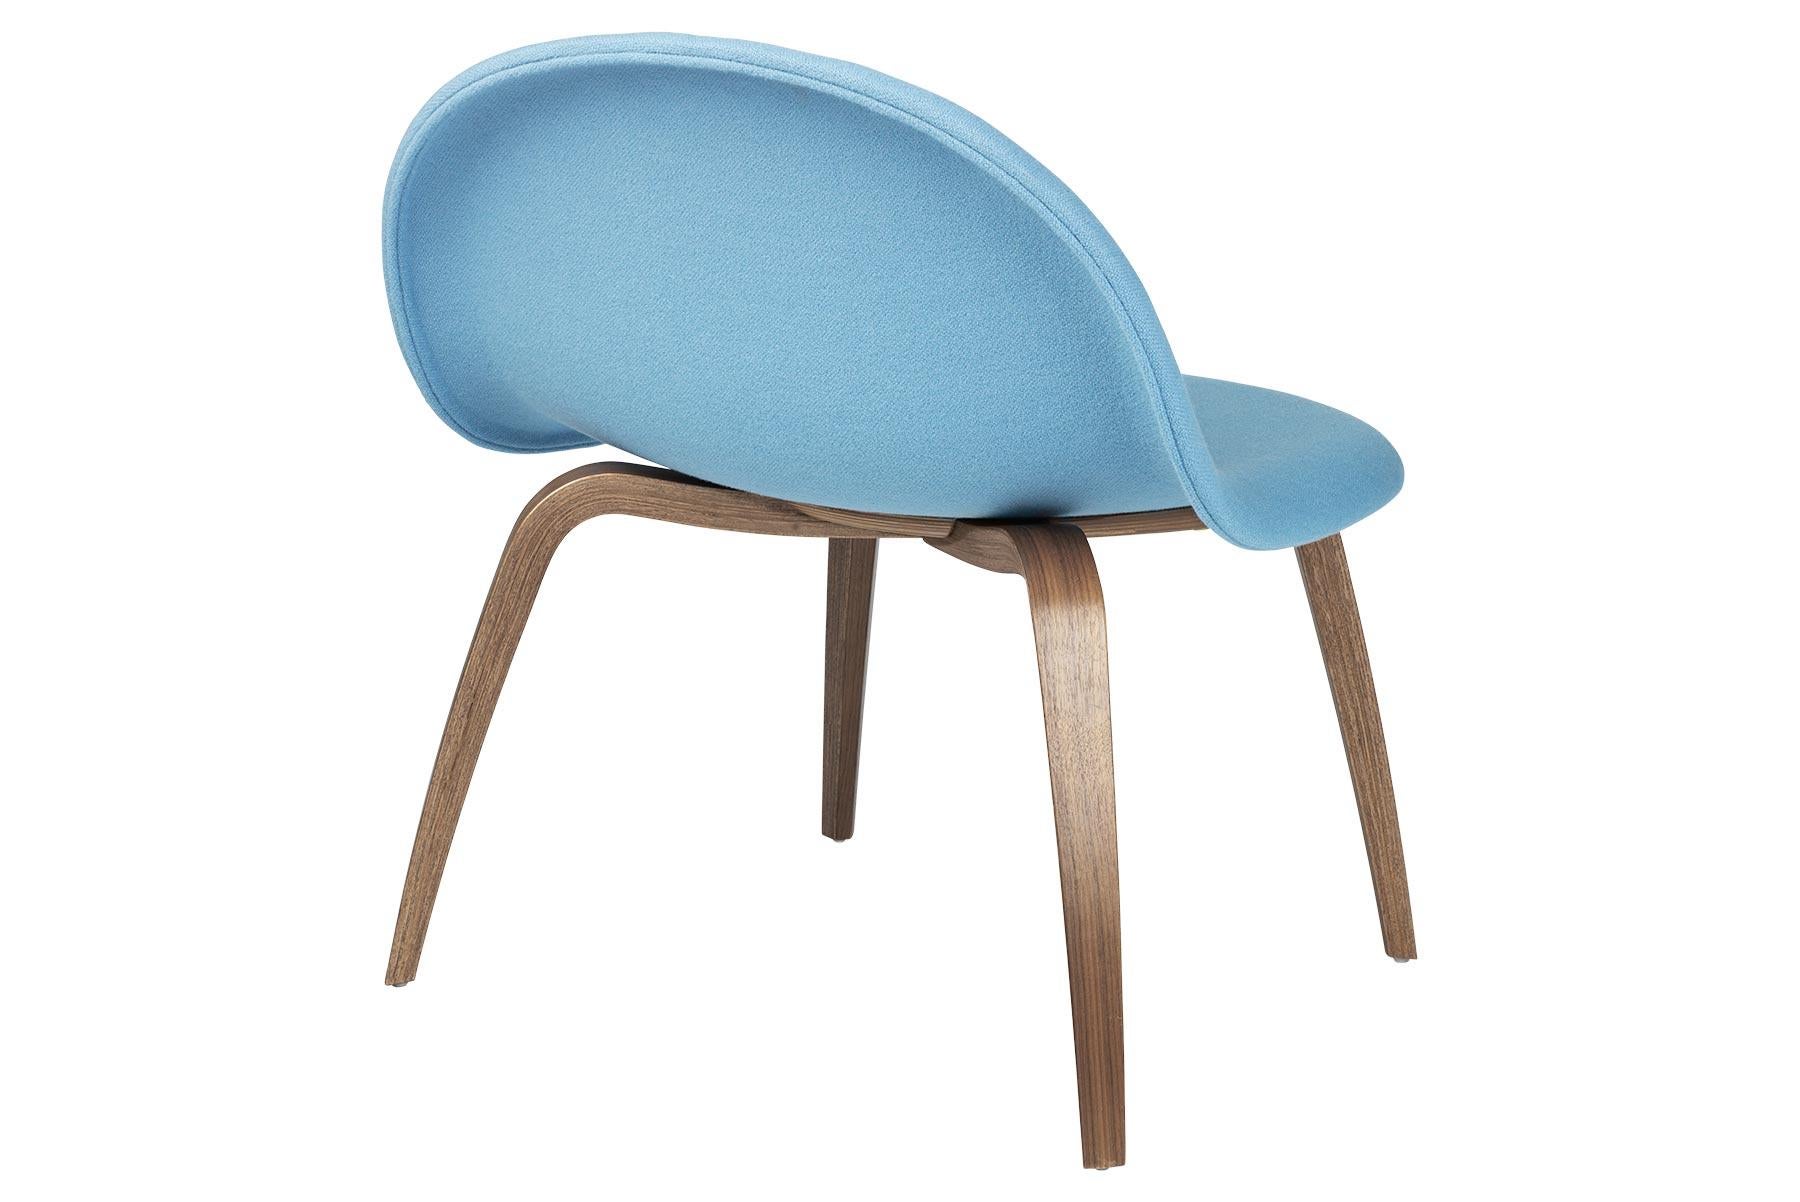 Conçue par le partenariat créatif de Komplot Design, la chaise longue Gubi est le premier meuble conçu à partir de la technique innovante du moulage de placage tridimensionnel. La conception 3D donne au fauteuil une assise confortable et une